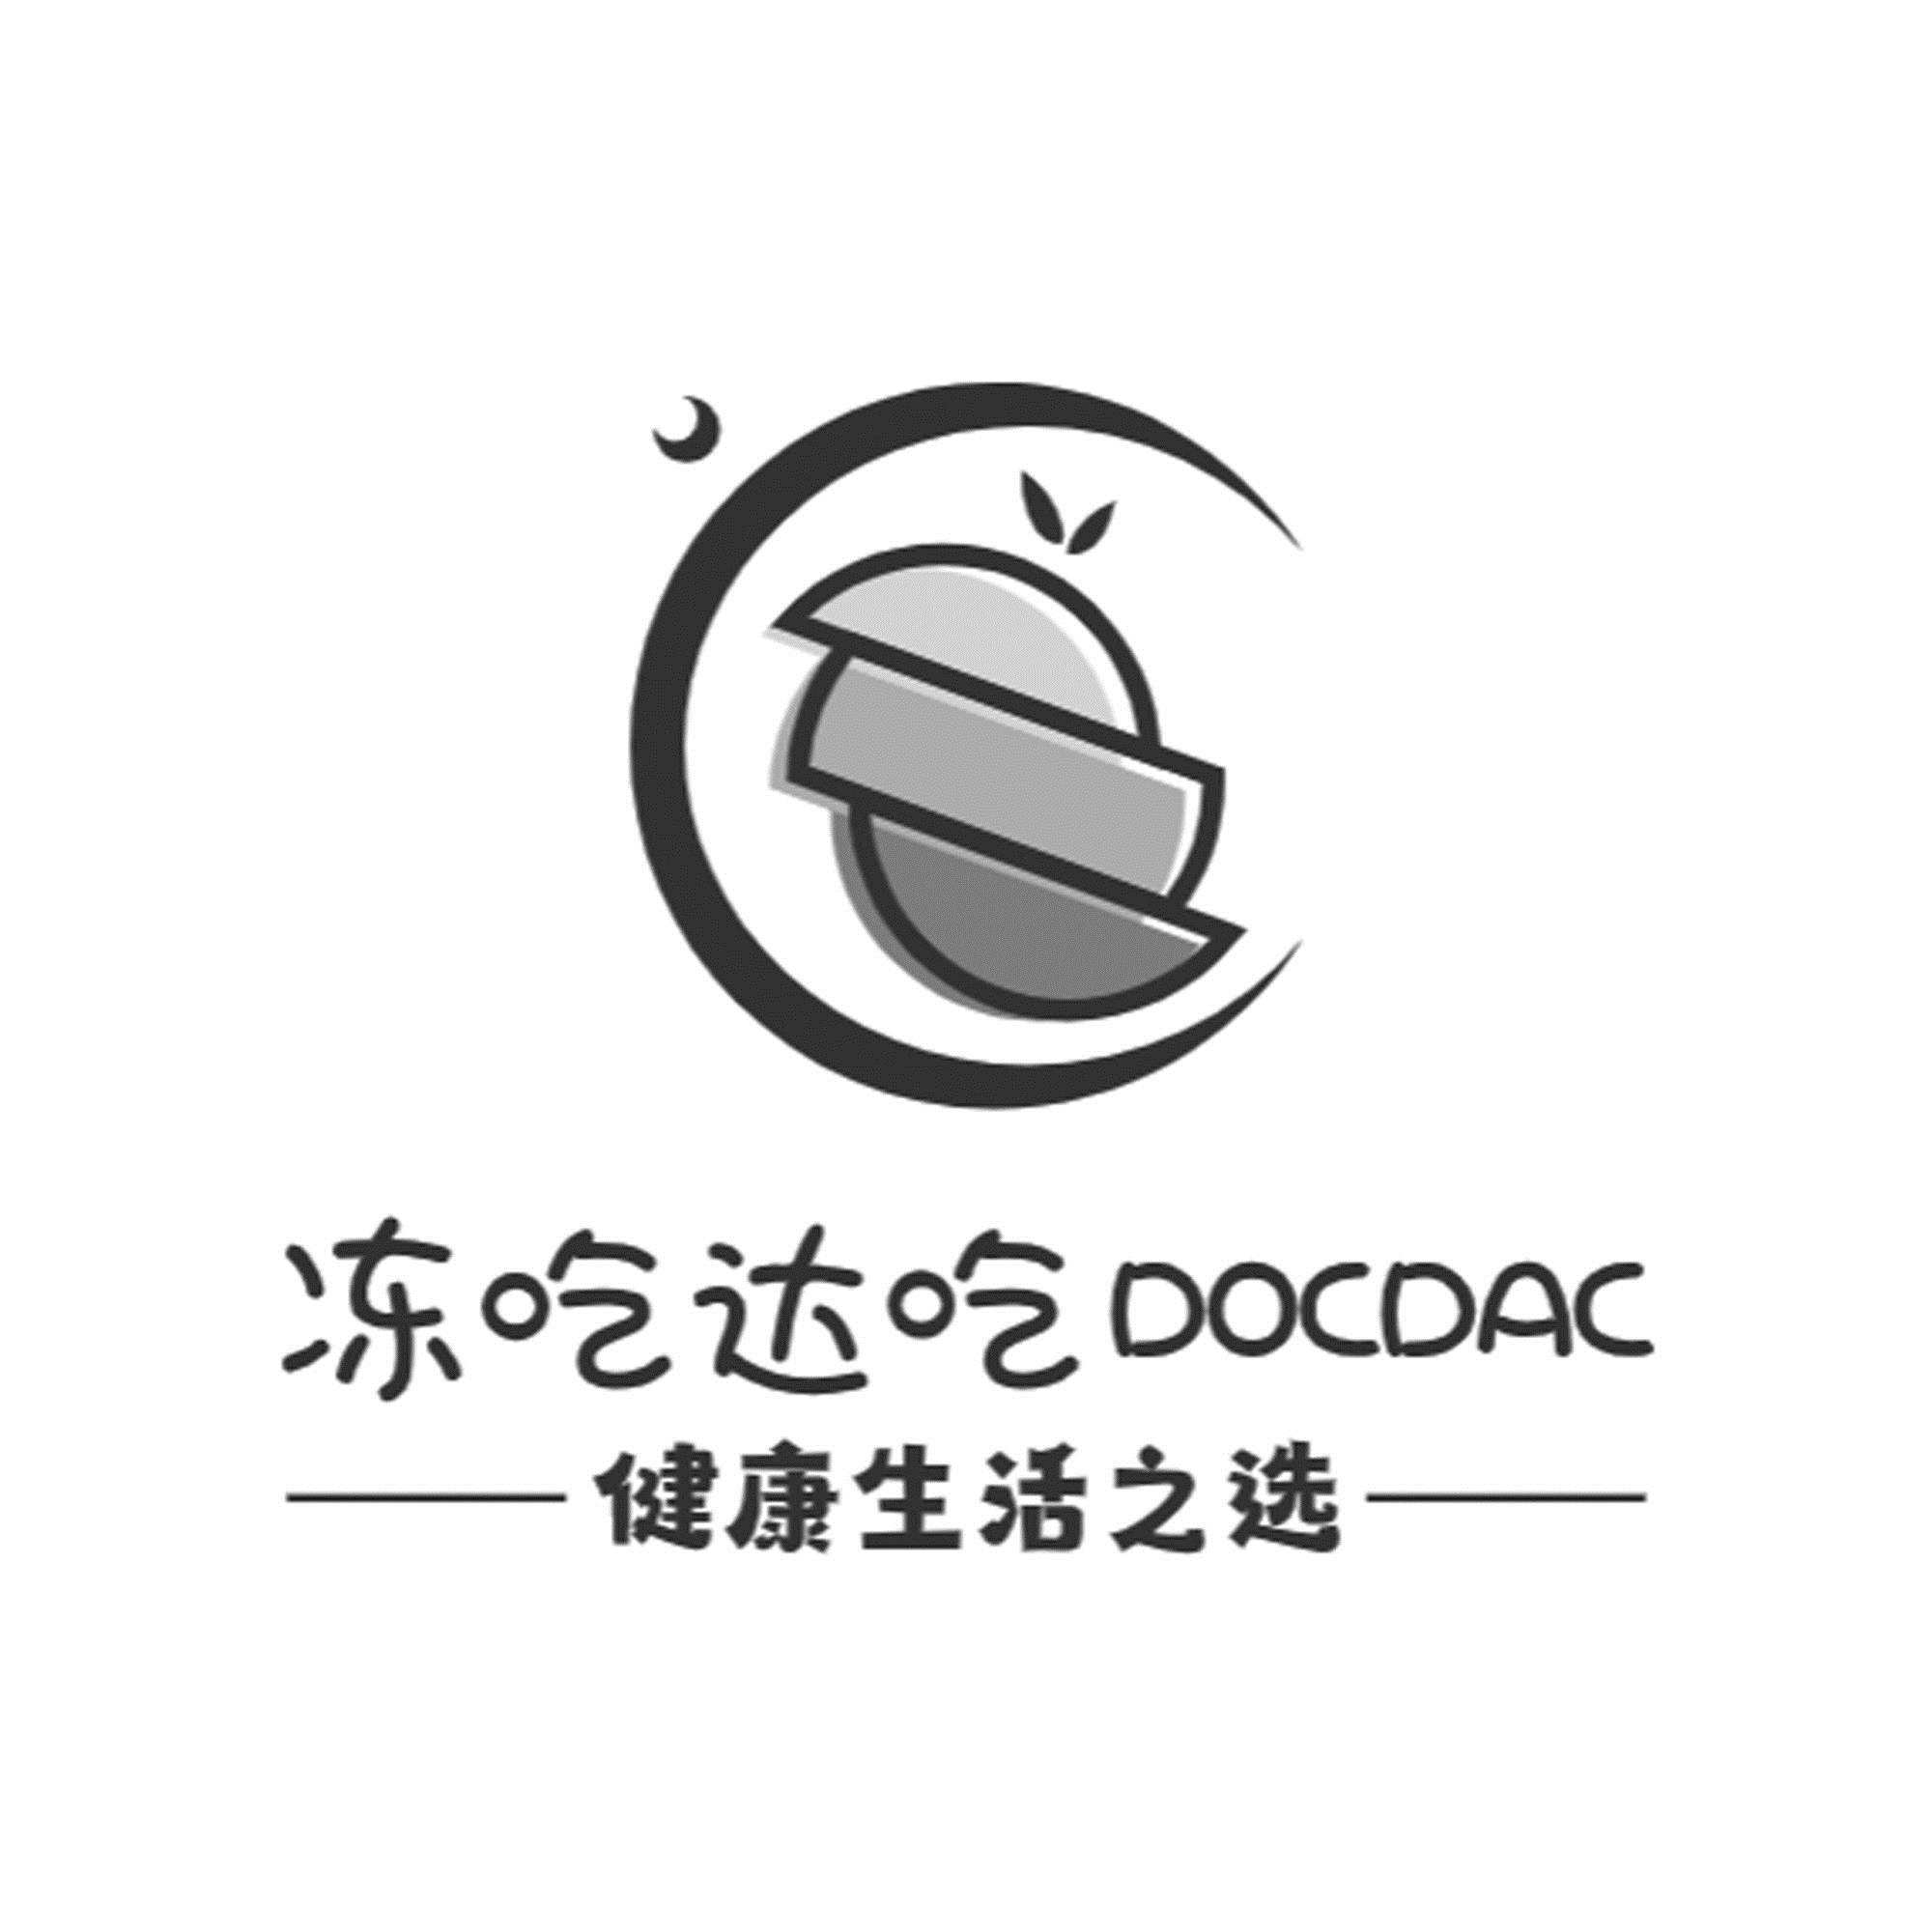 冻吃达吃 DOCDAC 健康生活之选